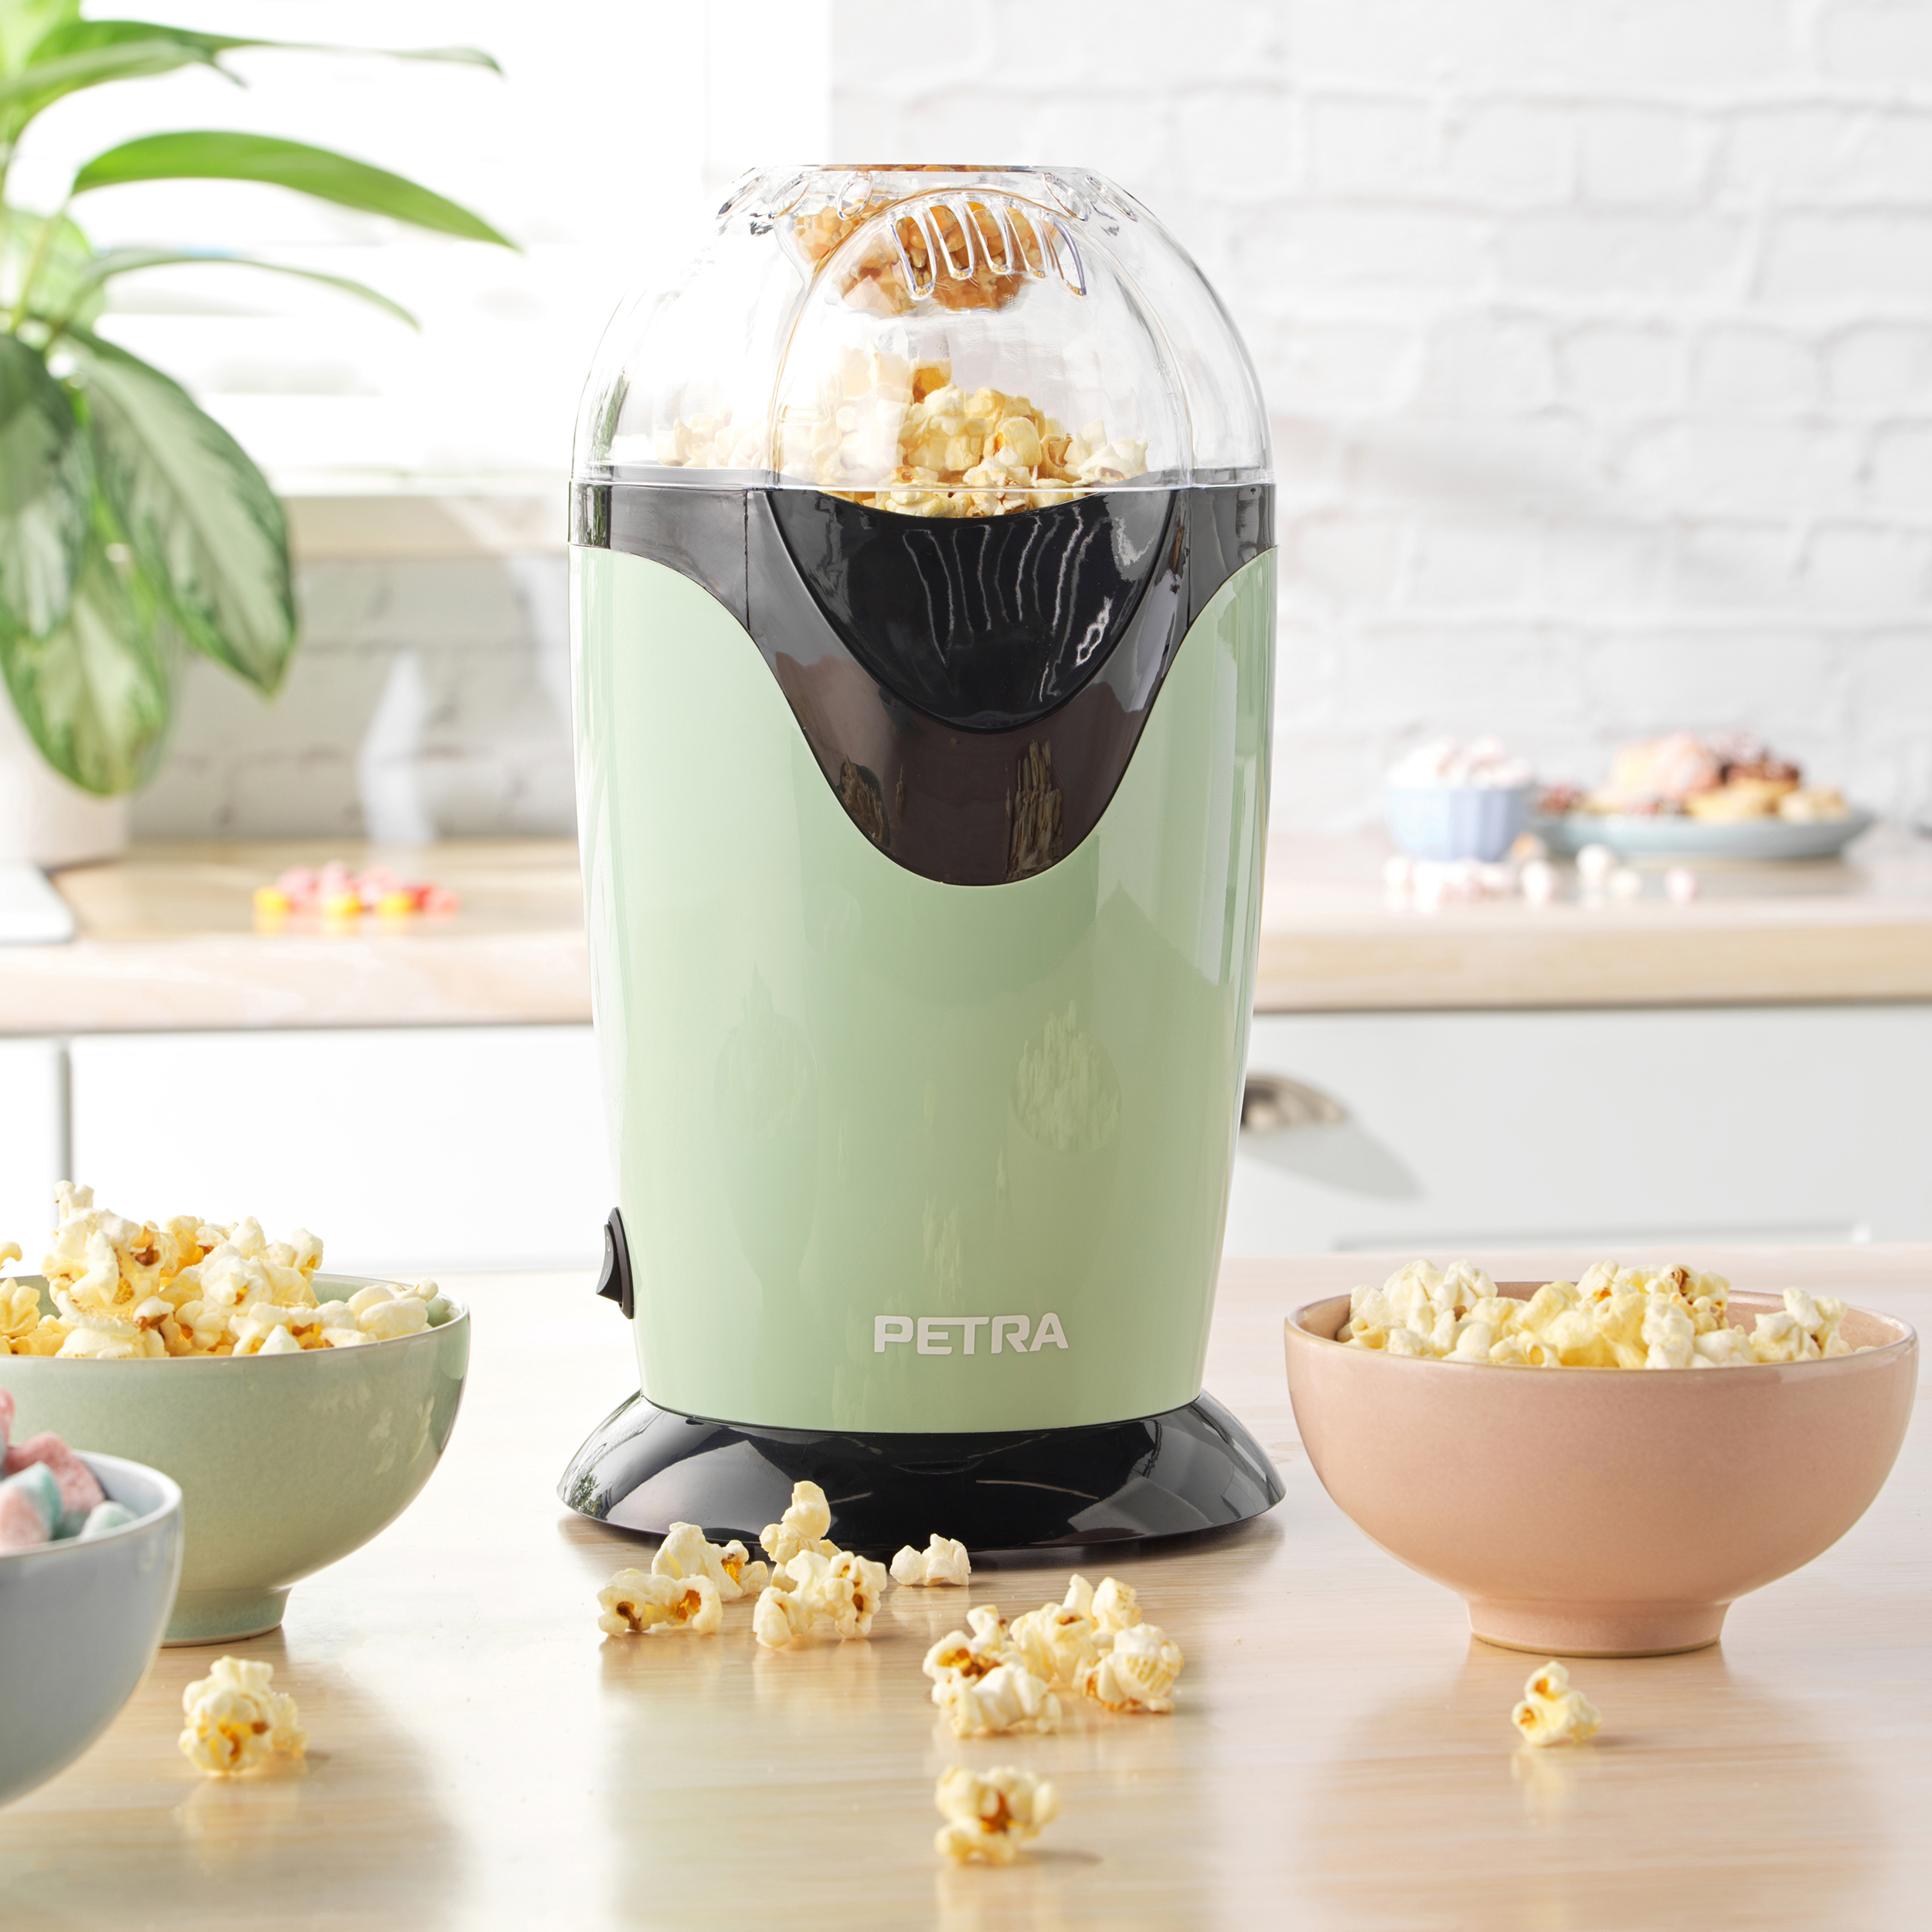 - grün oder Popcorn PETRA Messbecher Popcorn maker Öl - Popcornmaschine Heißluft - - Retro Popcornmaschine Butter ohne 1200W